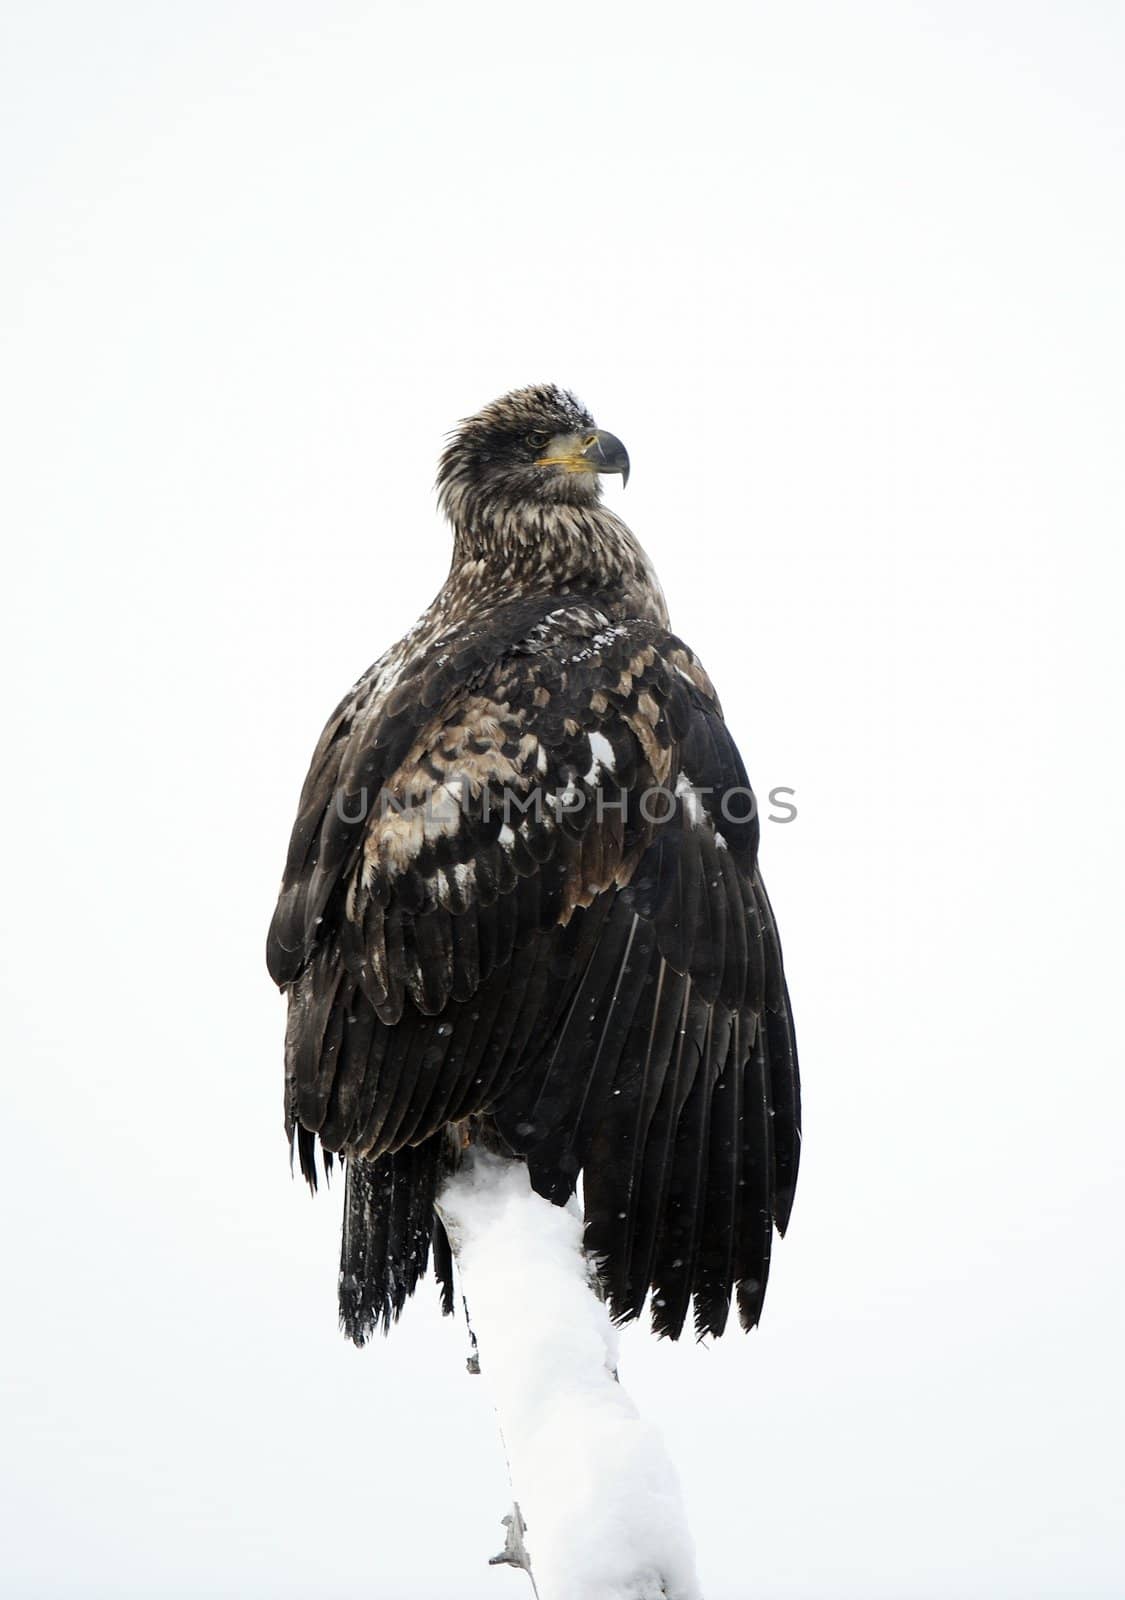 A bald eagle (Haliaeetus leucocephalus) by SURZ